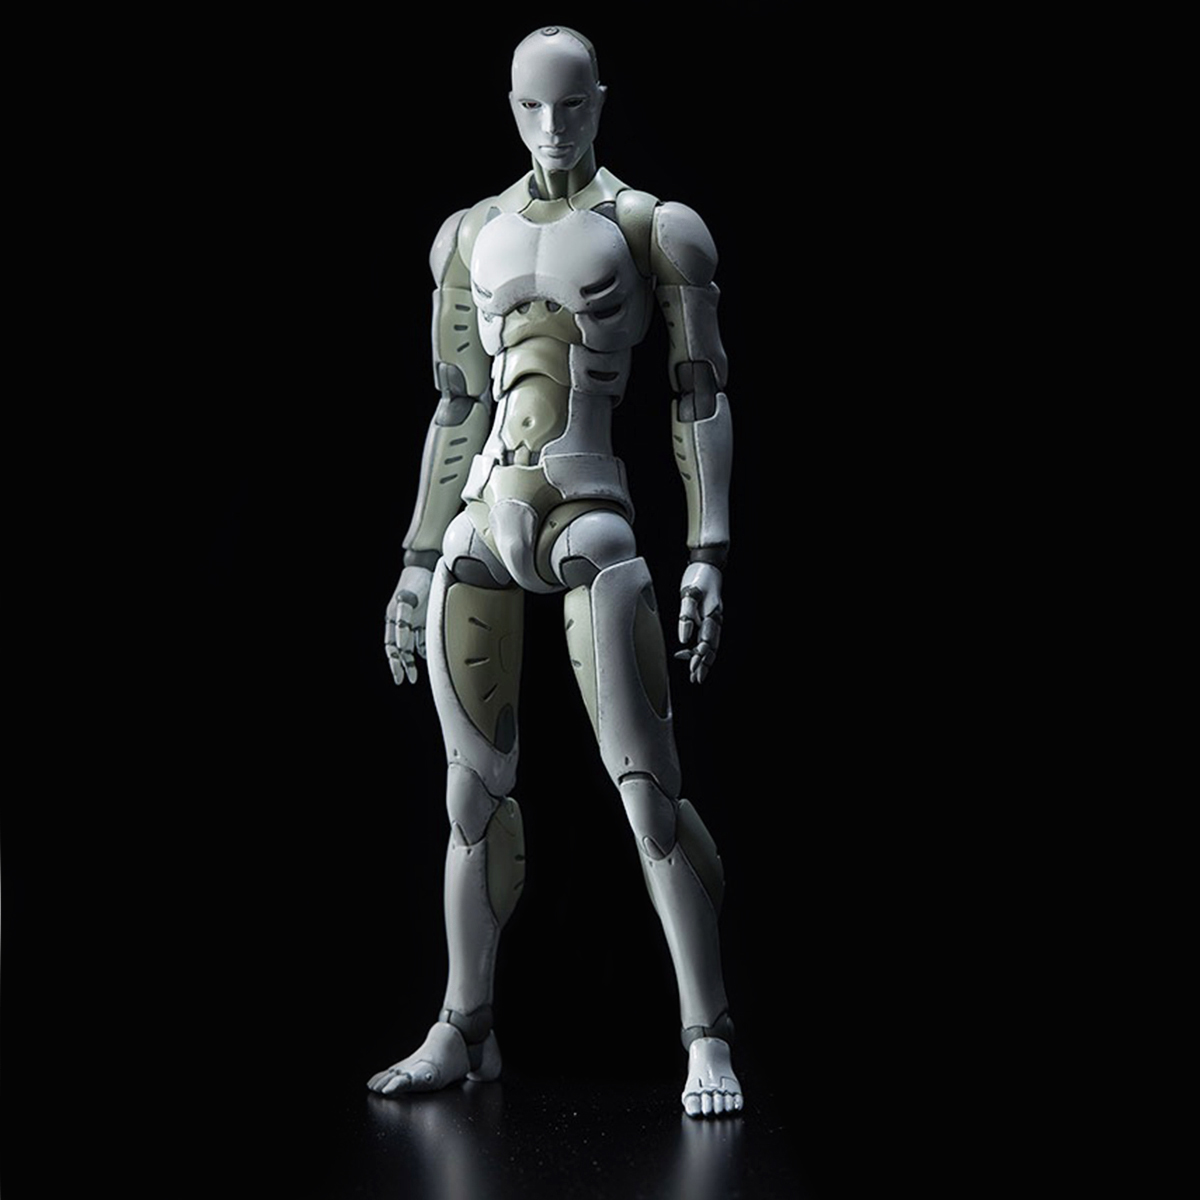 

1/12 Синтетическая фигура человеческого тела для тела Рисунок PVC Модель Кукла для рисования эскиза